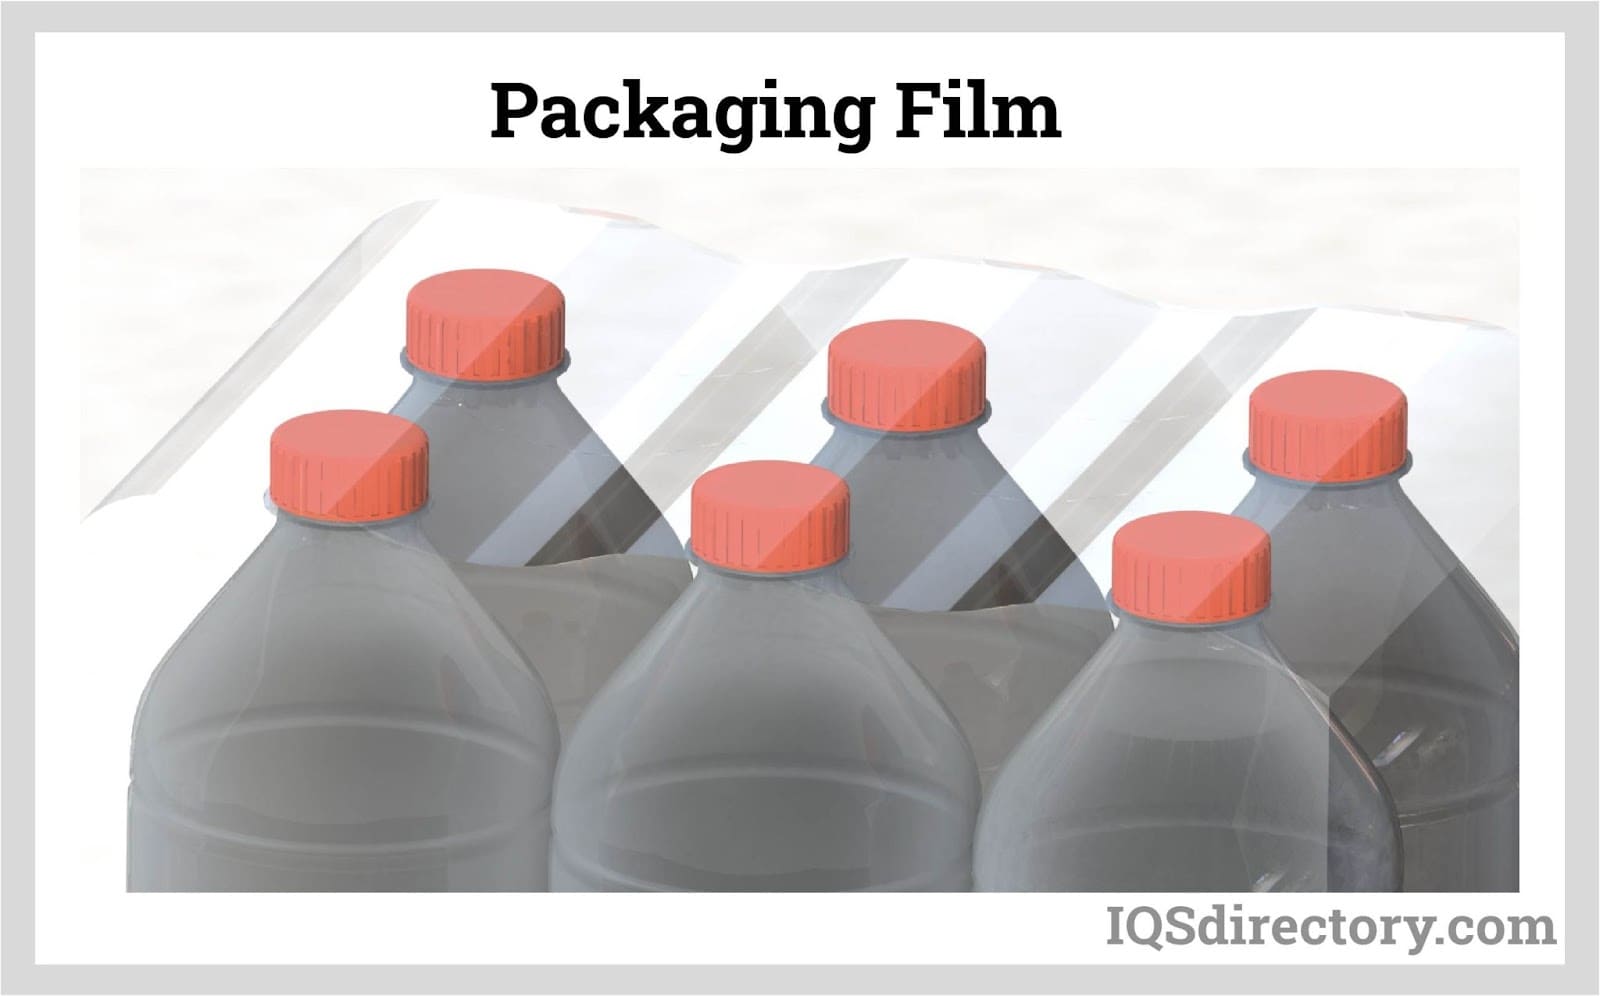 Packaging Film